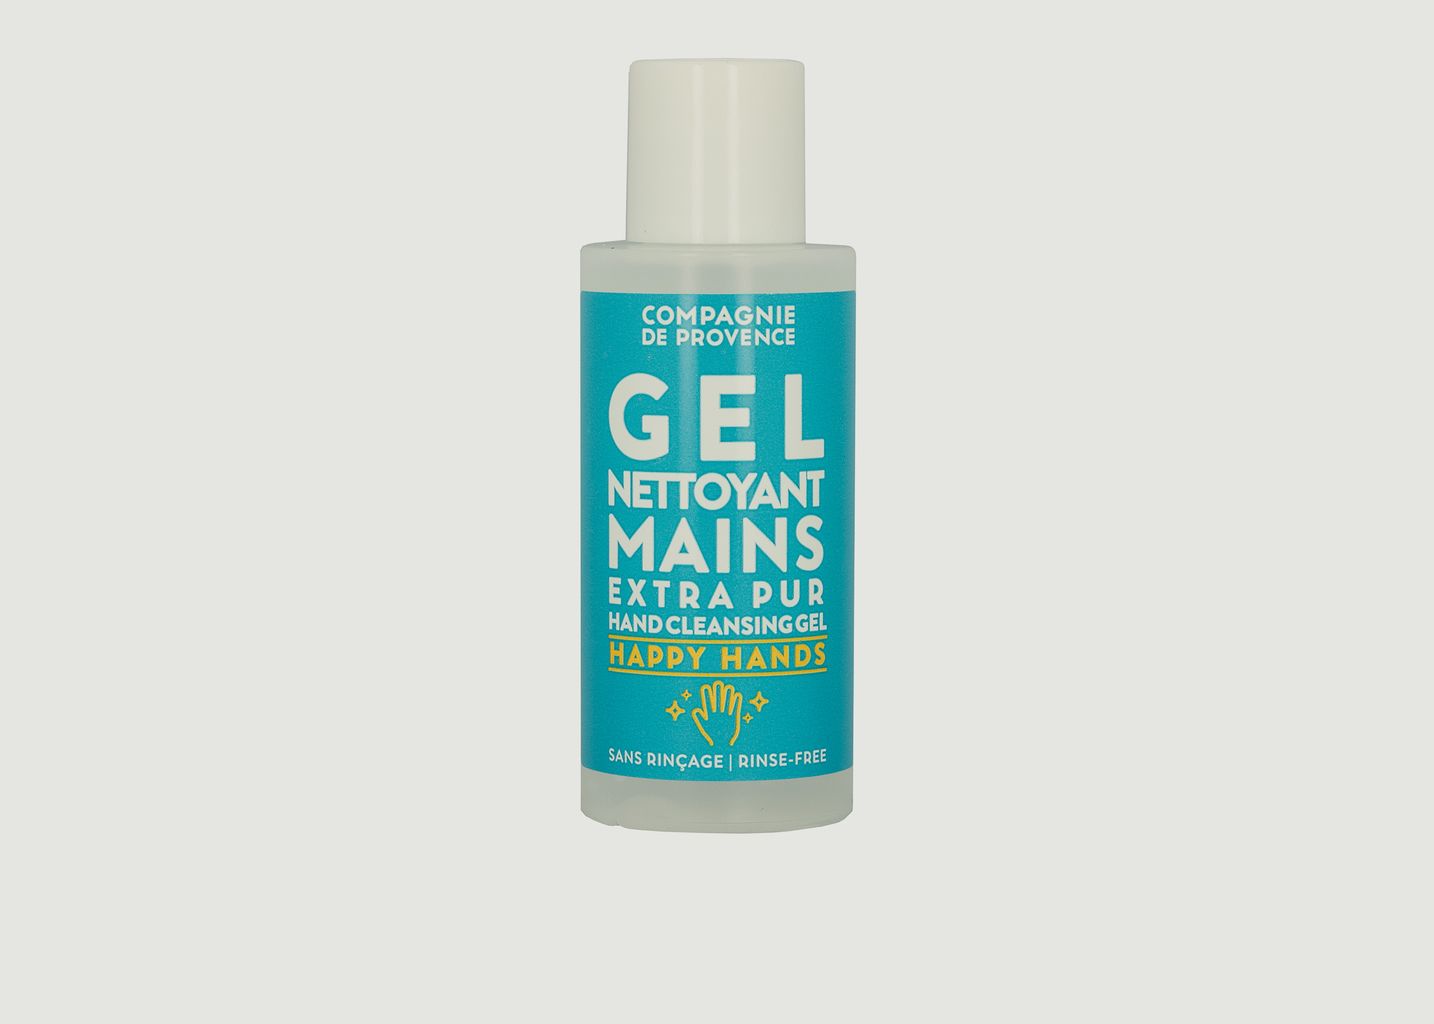 Hand Cleansing Gel - La Compagnie de Provence